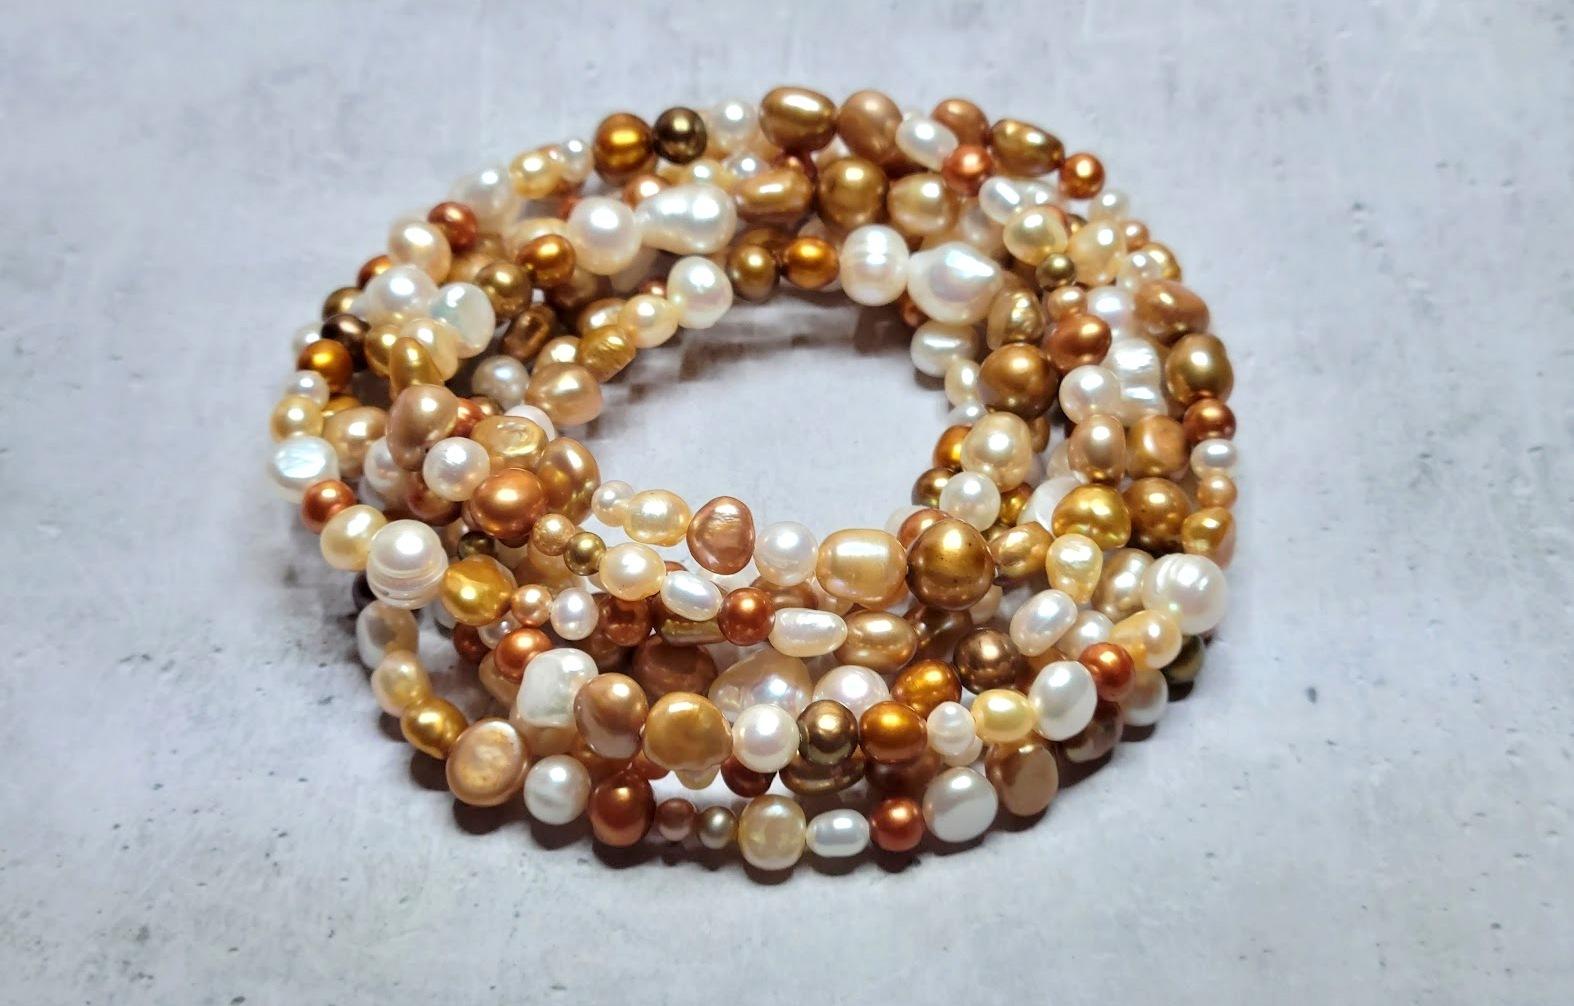 Ein erstaunlicher Ausdruck von modernem Chic und Charme, inspiriert von der Geburt echter Perlen. Diese Statement-Perlenkette kreiert einen verspielten, hellen und koketten Look. Im Gegensatz zur traditionellen runden Form verleiht die unregelmäßige